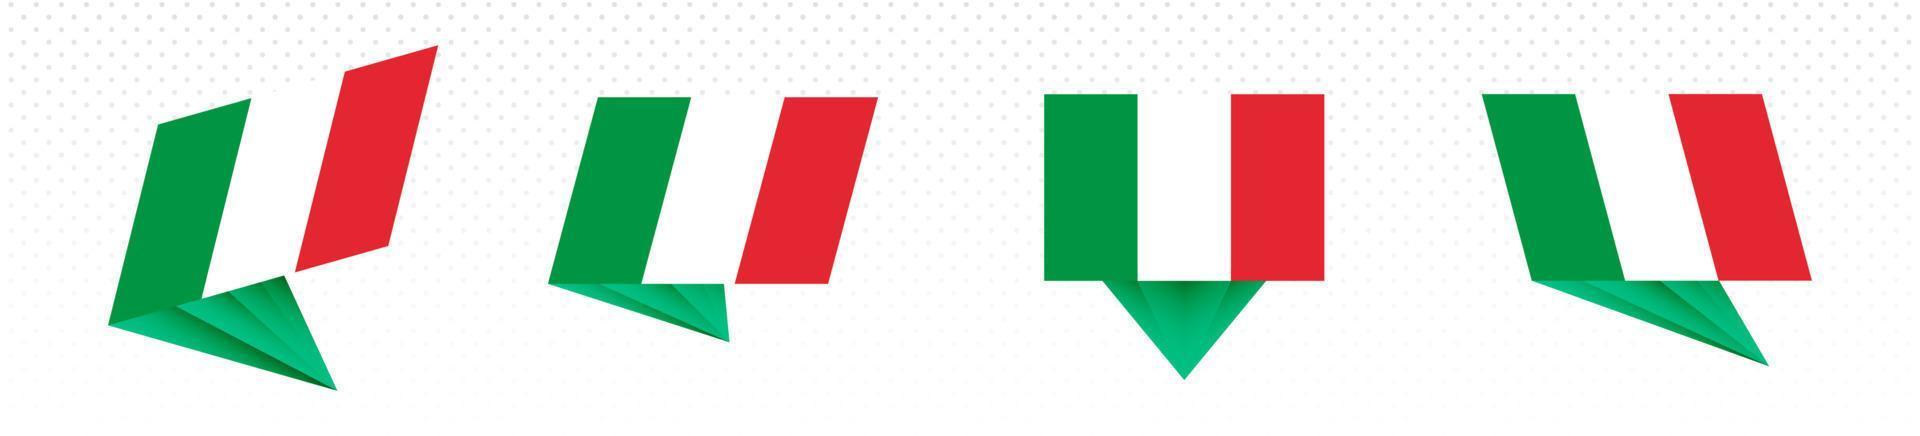 flagga av Italien i modern abstrakt design, flagga uppsättning. vektor